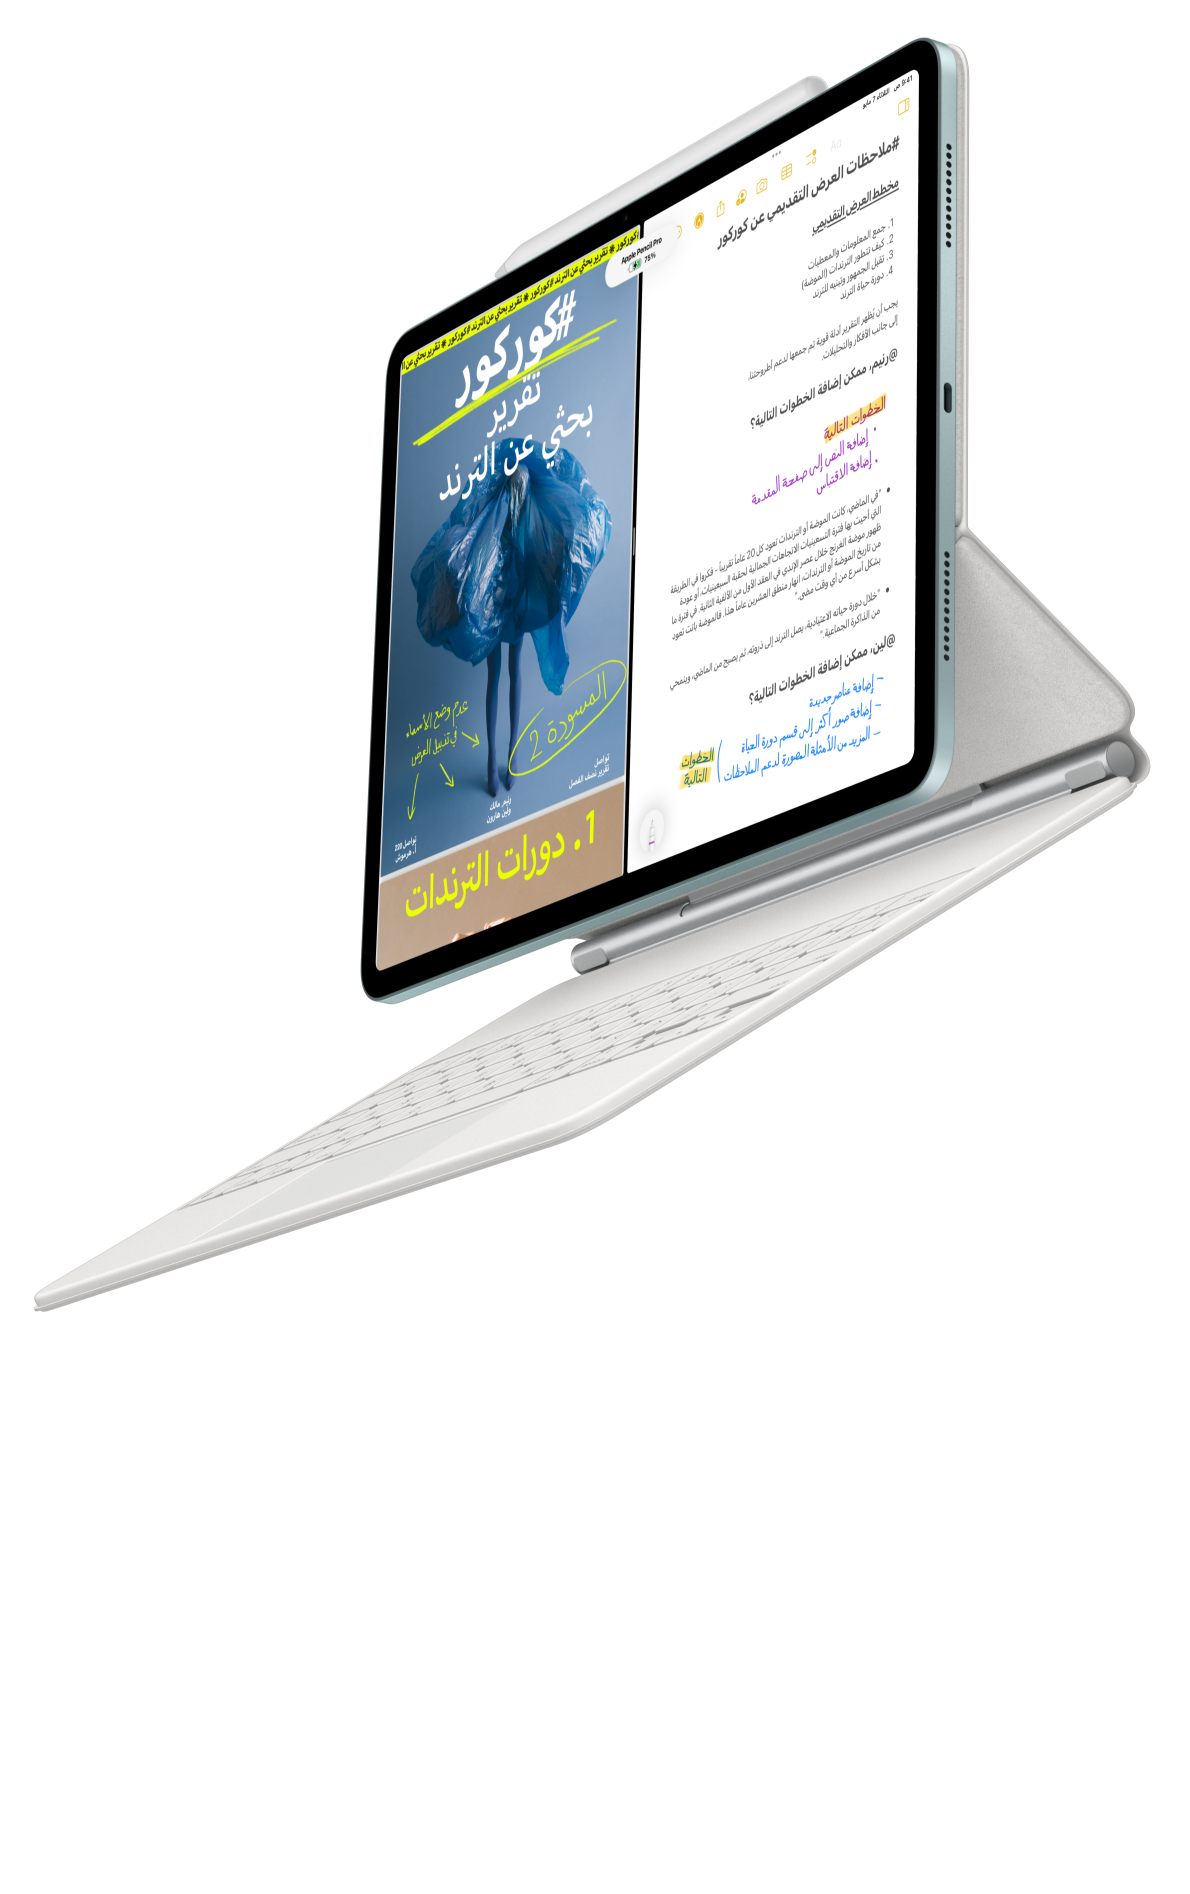 جهاز iPad Air يتصل بلوحة مفاتيح ماجيك وقلم Apple Pro